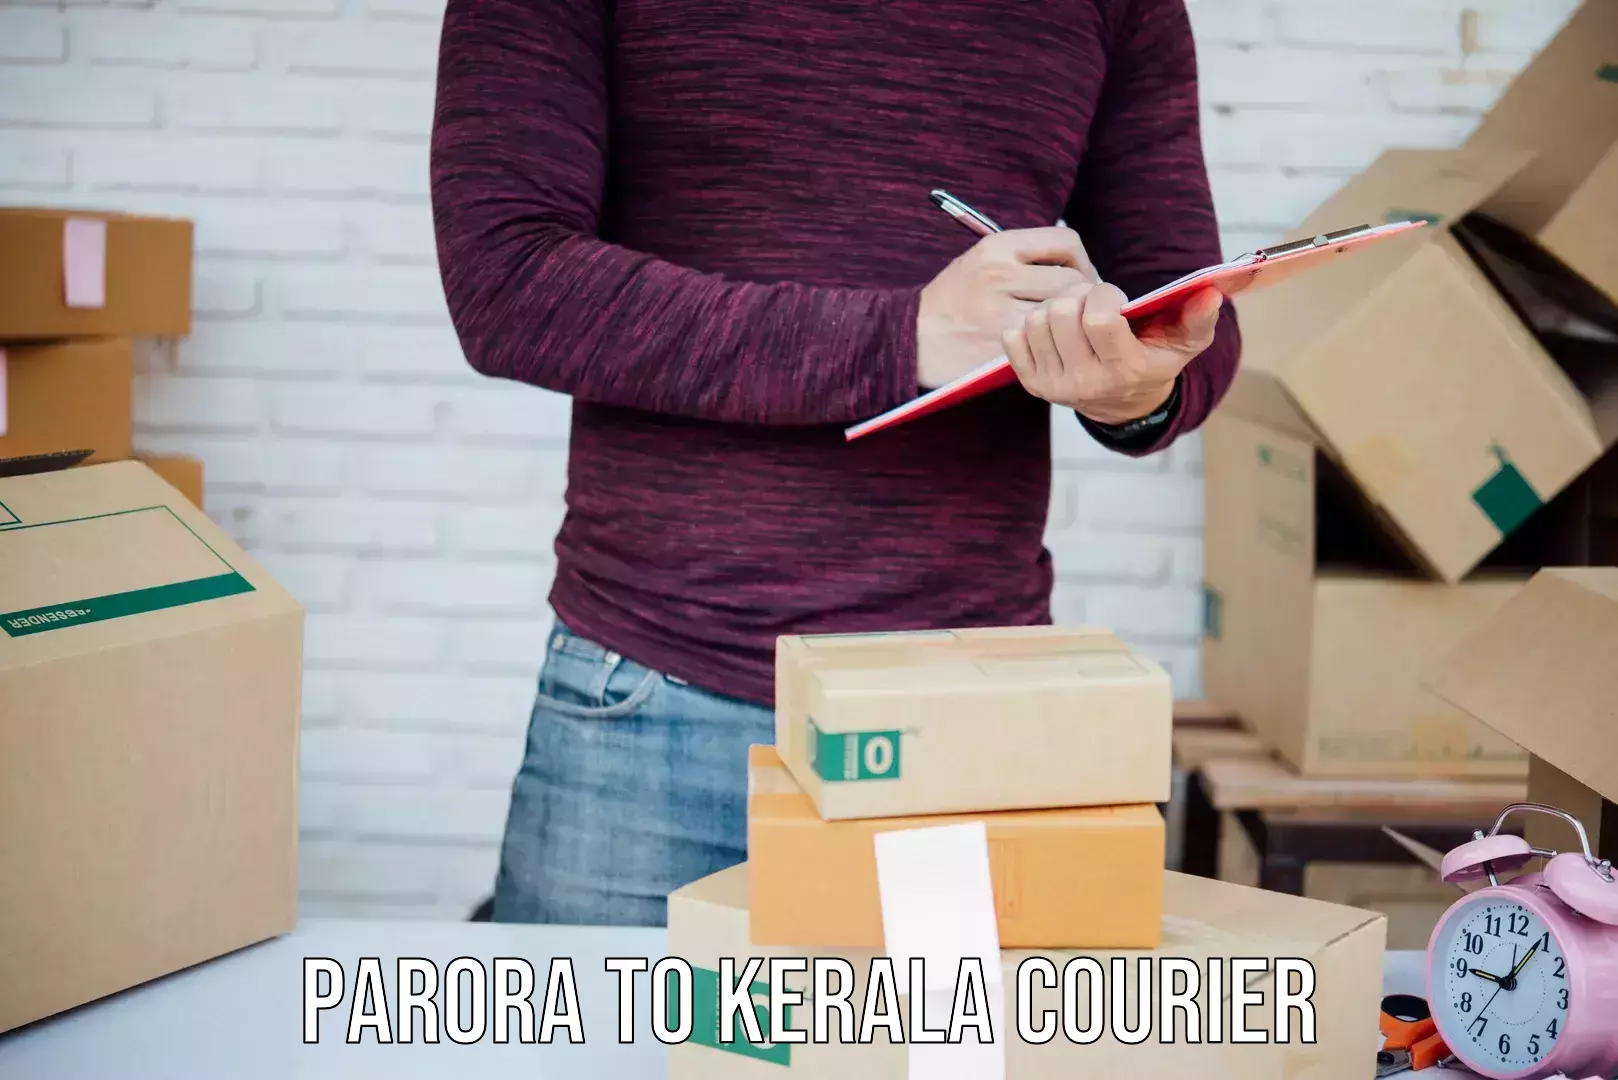 Courier rate comparison Parora to Kerala